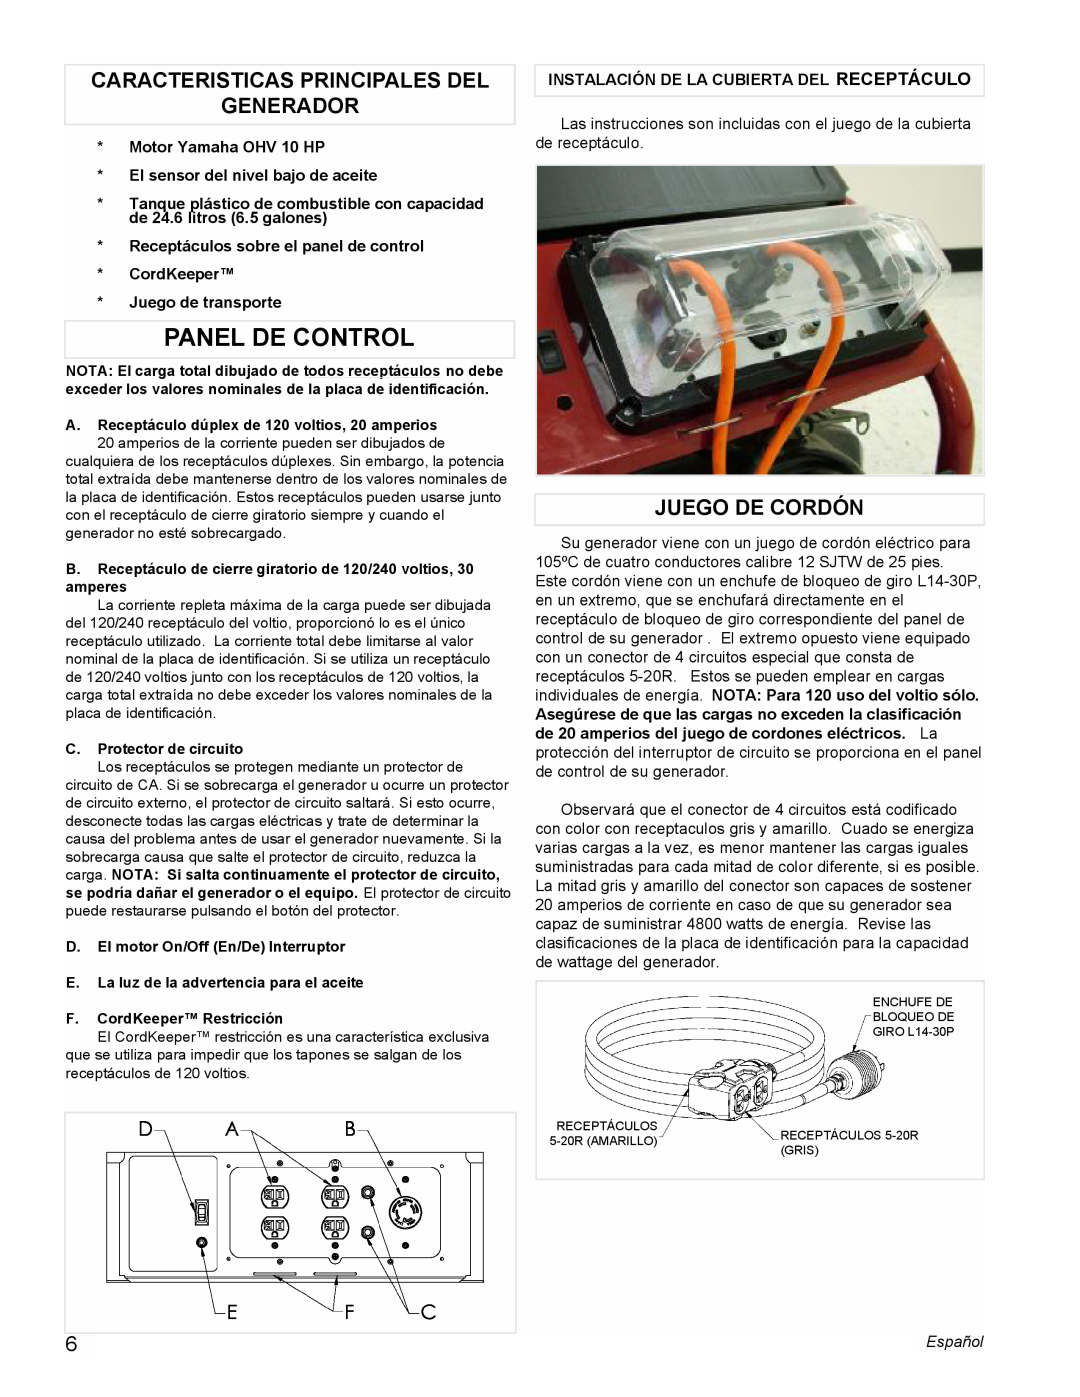 Powermate PM0675700 manual Panel De Control, Caracteristicas Principales Del Generador, Juego De Cordón 